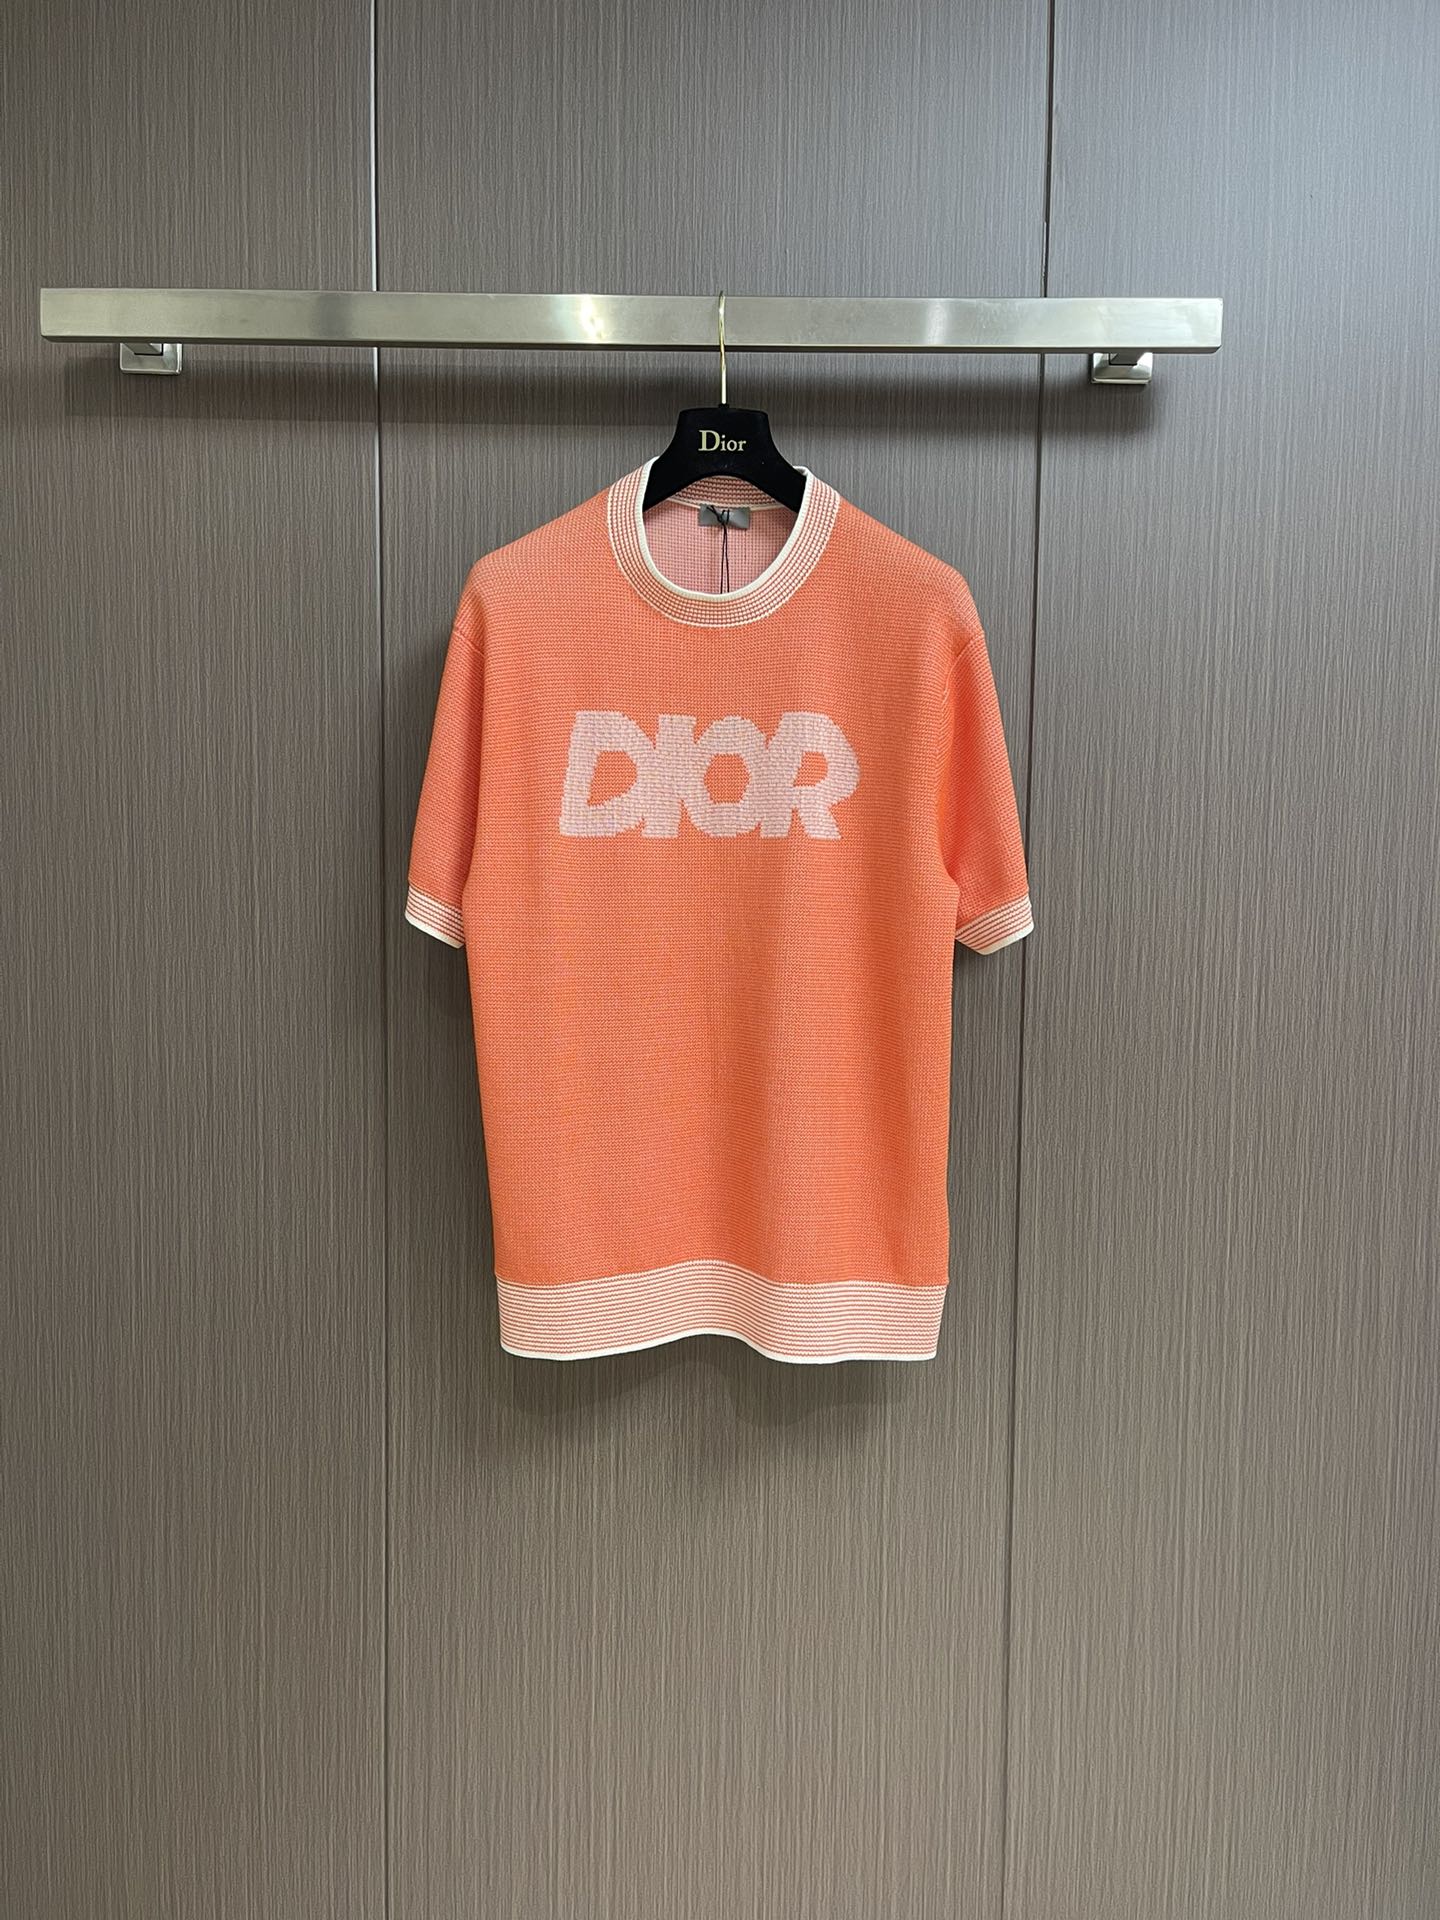 おしゃれ Dior Italic ニットTシャツ クリスチャン・ディオール ニットウェア コピー オレンジ